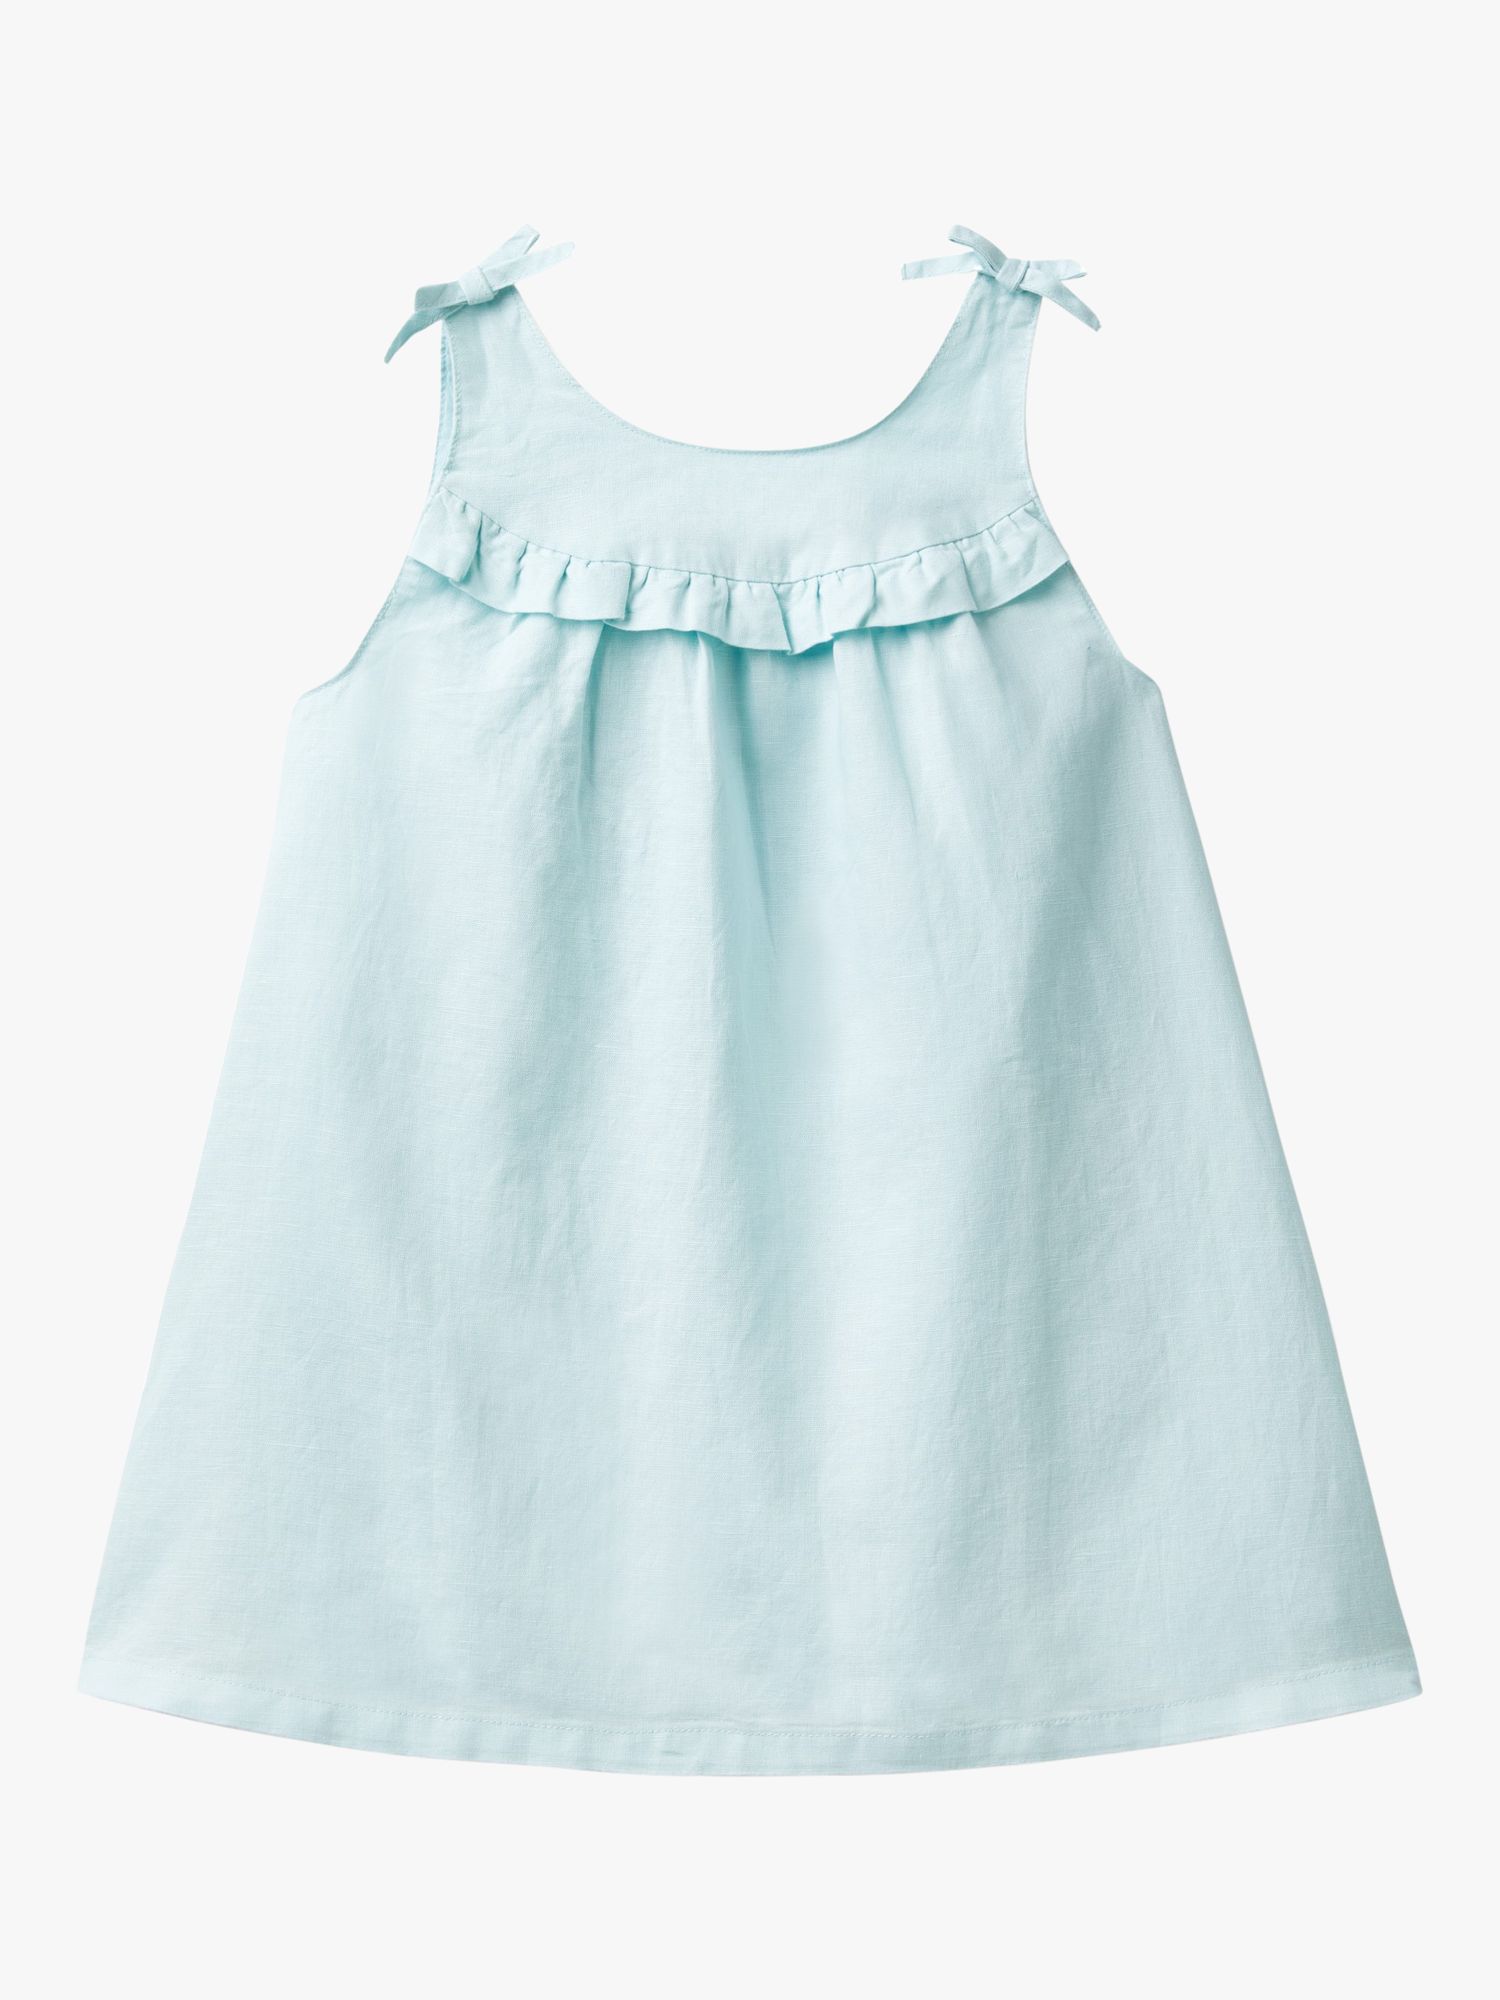 Benetton Kids' Linen Blend Ruffle Bow Detail Dress, Starlight Blue, 18-24 months